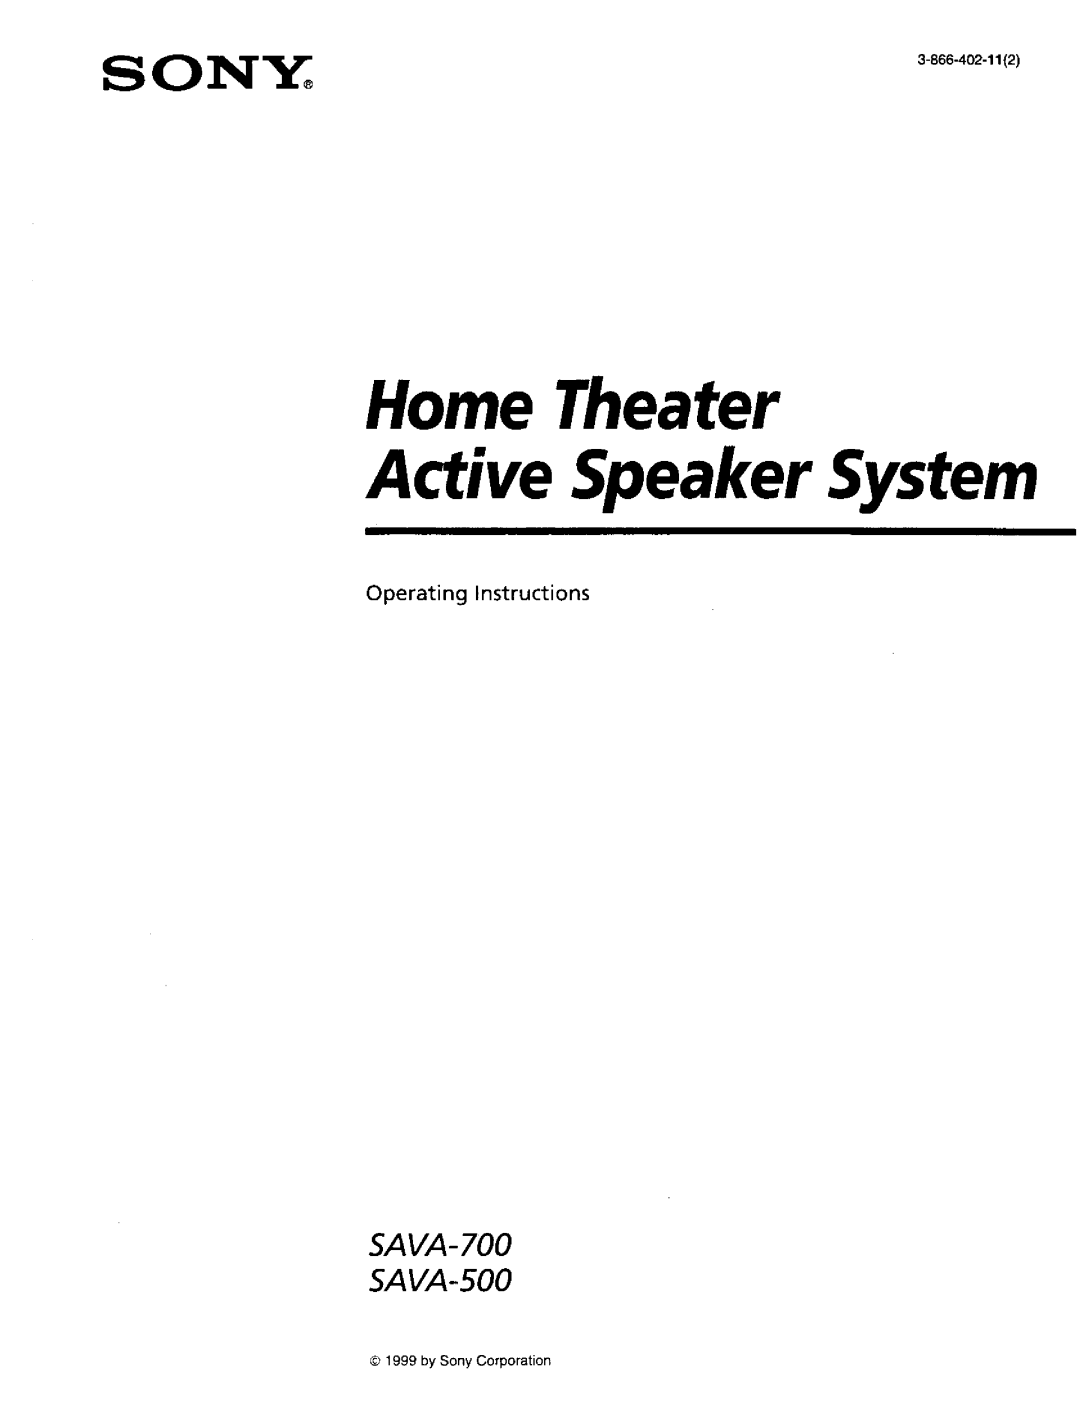 Sony SA-VA700 manual Operating Instructions, Home Theater Active Speaker System, SAVA- SAVA-500, by Sony Corporation 